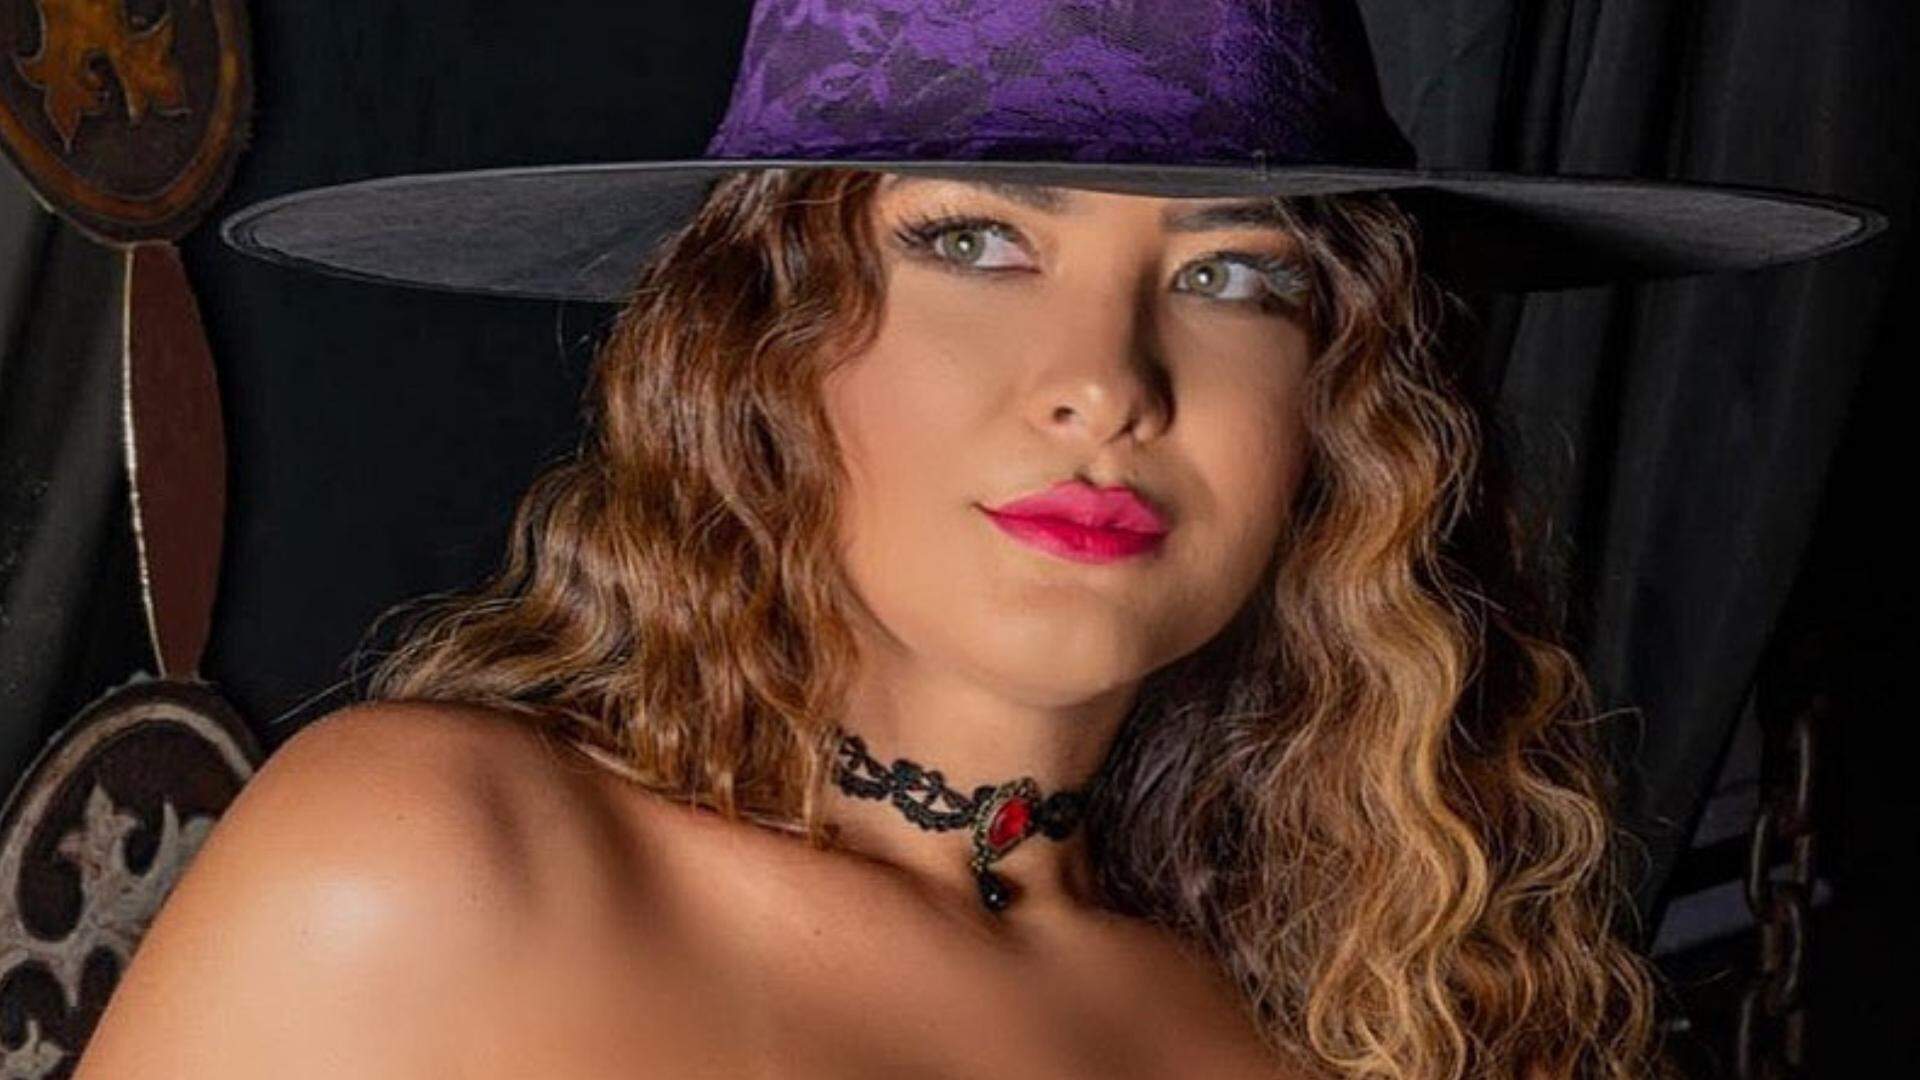 Geisy Arruda se fantasia de bruxa no Halloween e mostra “abóbora” gigante: “Travessuras” - Metropolitana FM